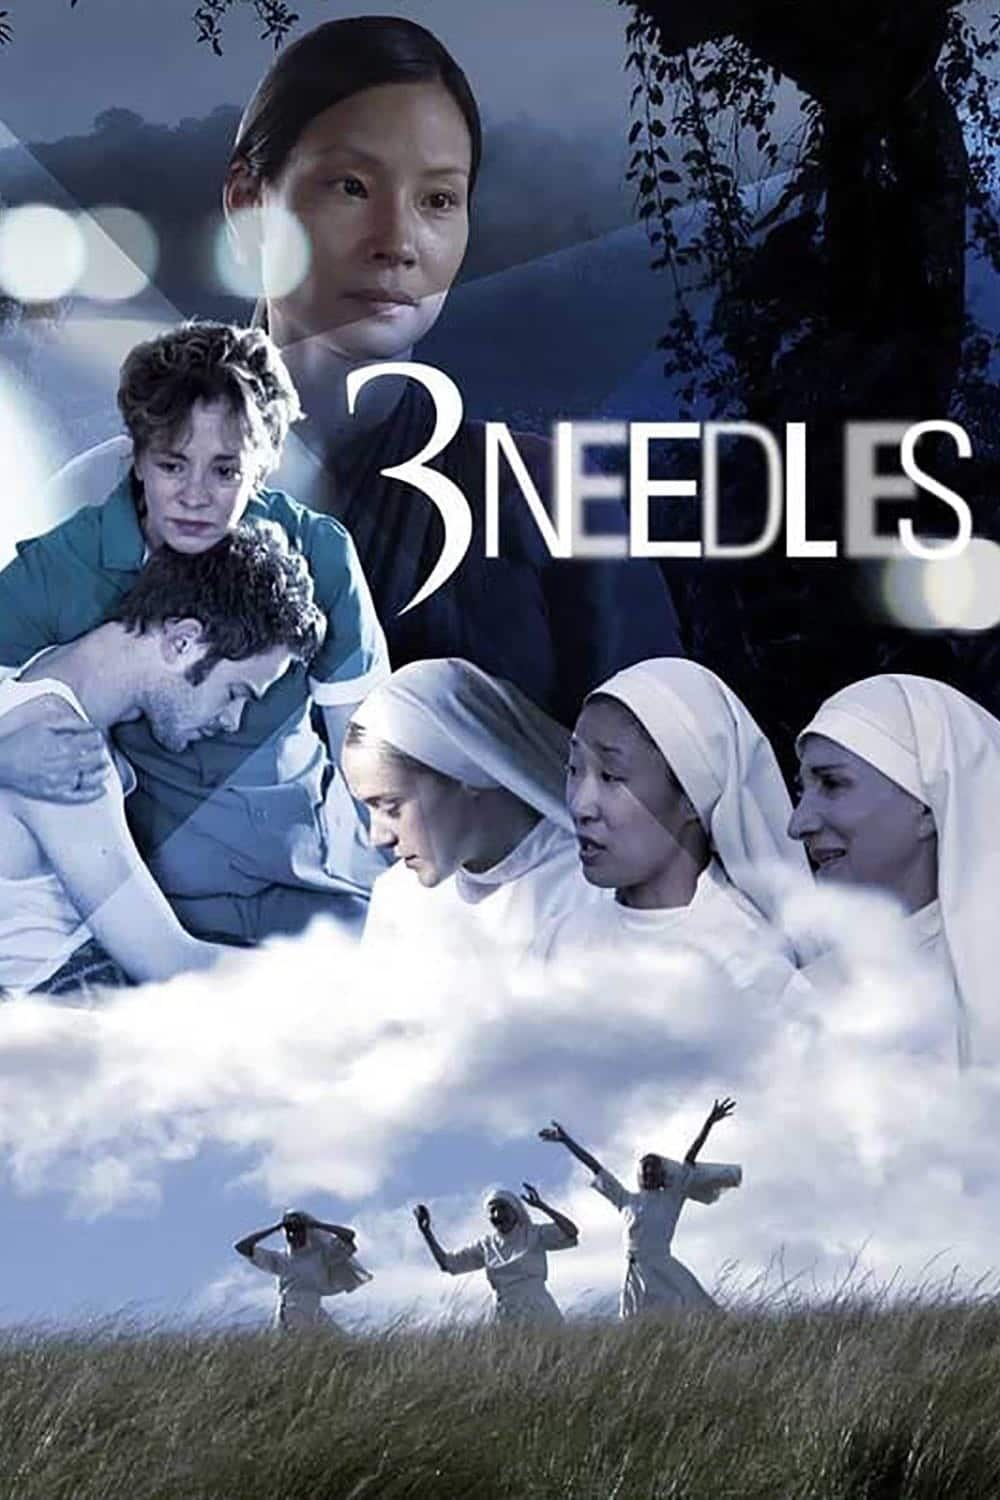 Plakat von "3 Needles"